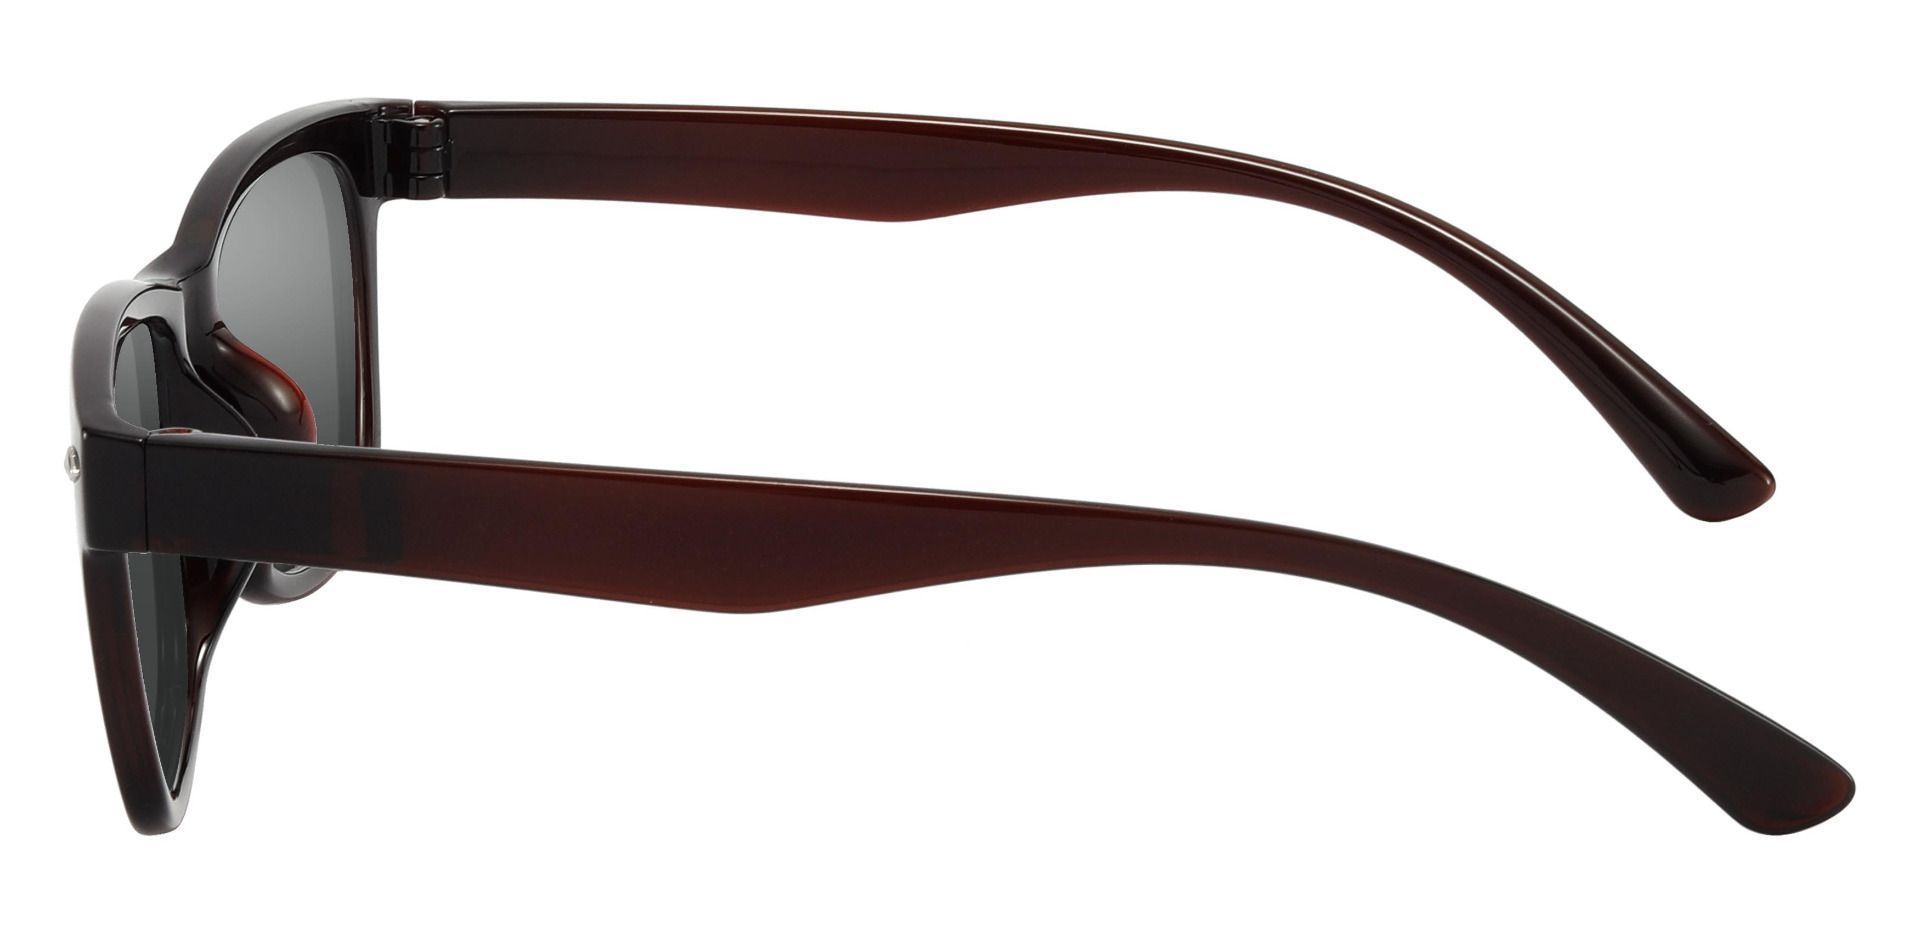 Shaler Square Progressive Sunglasses - Red Frame With Gray Lenses